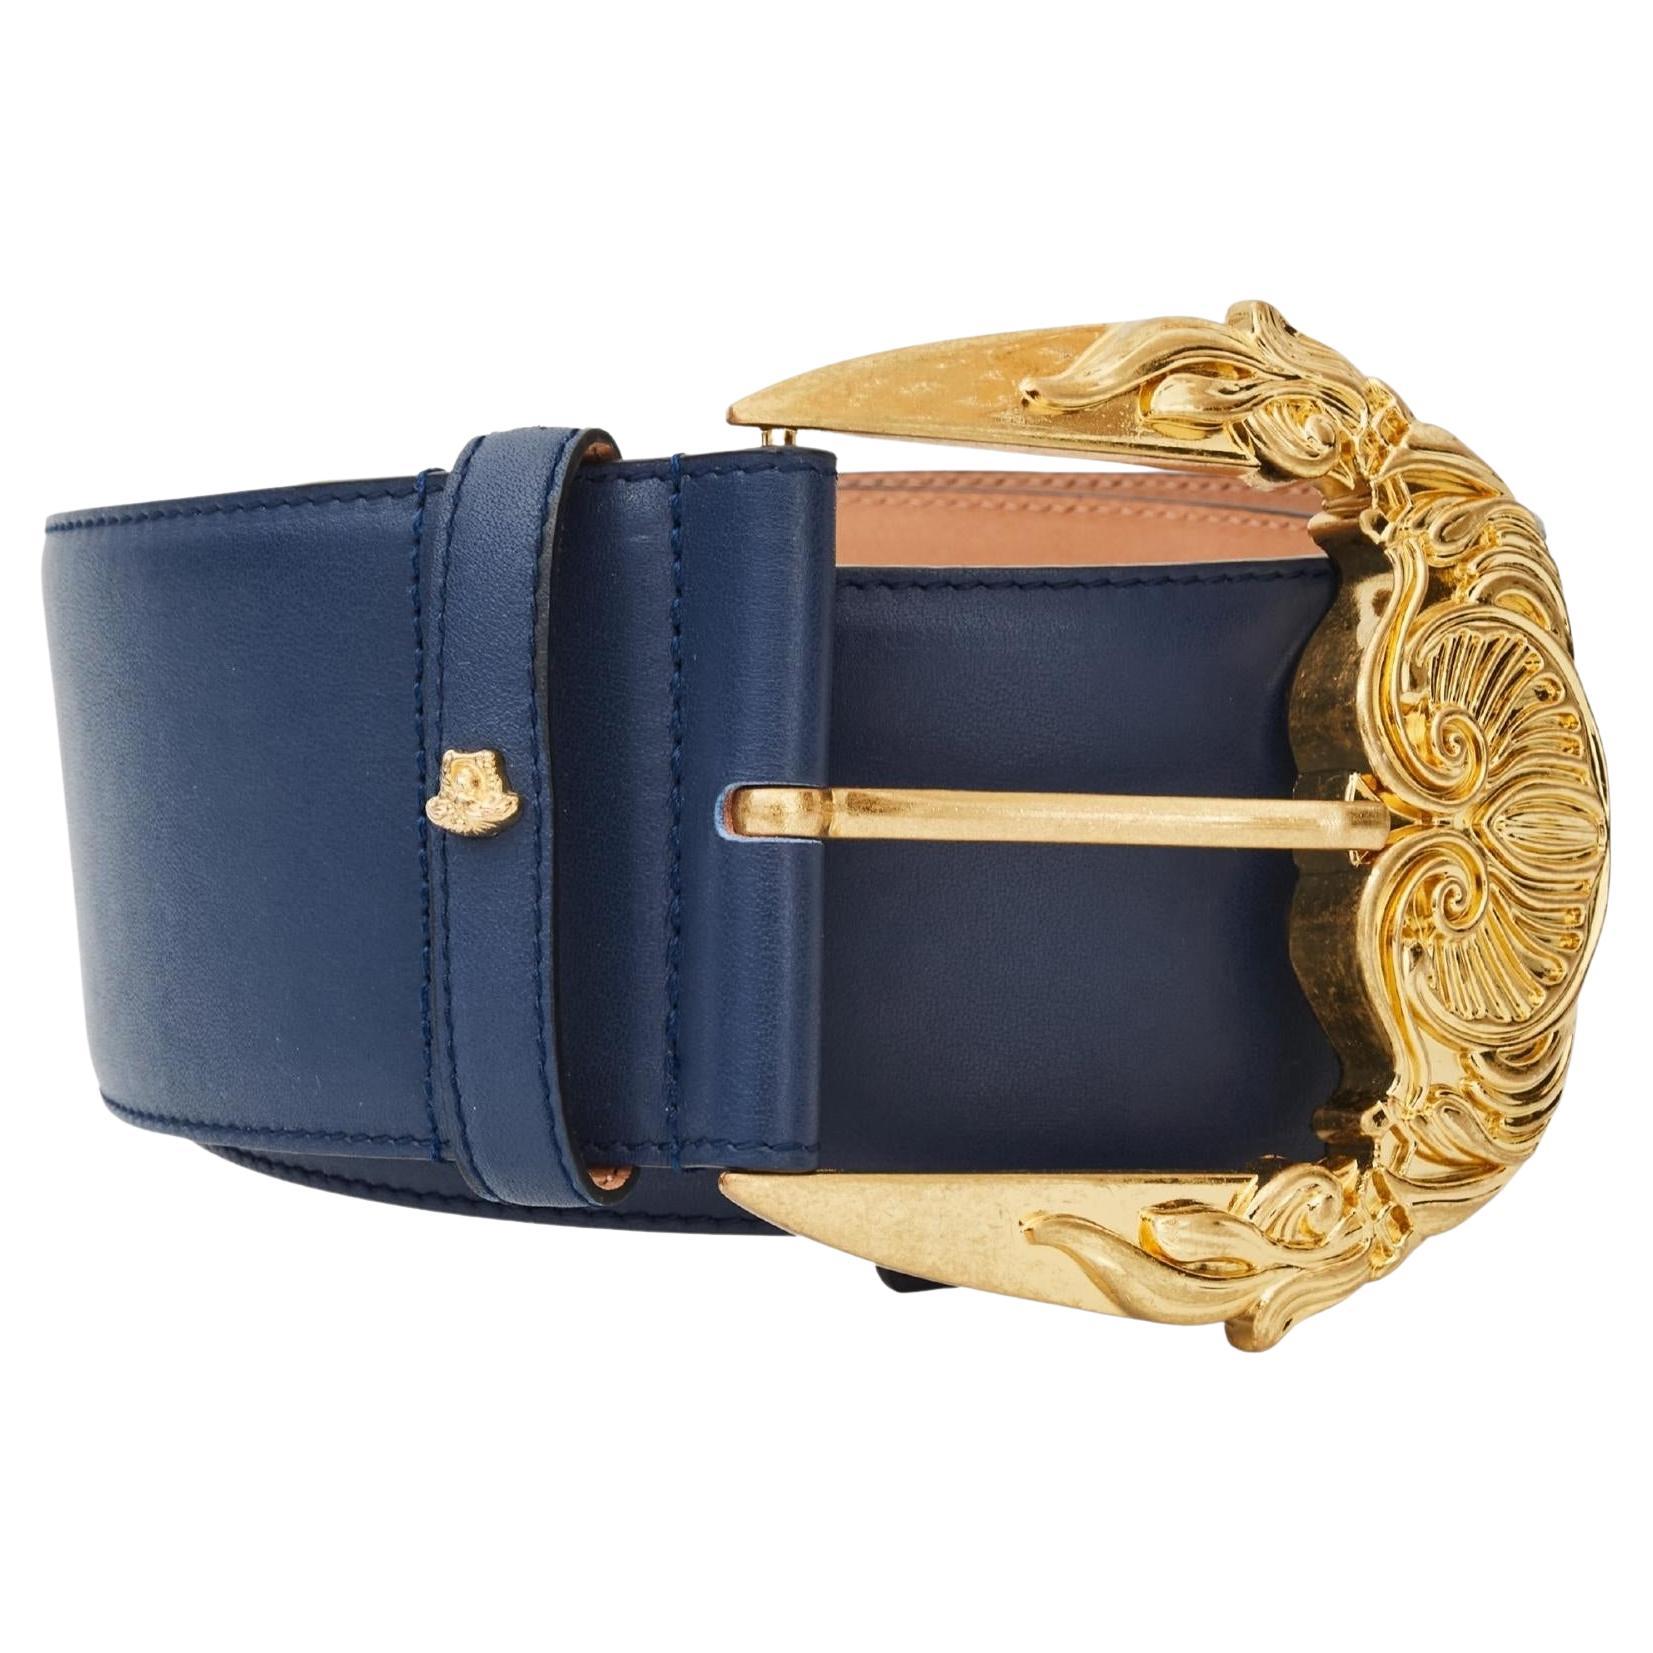 Versace Gold Buckle Navy Leather Baroque Runway Wide Belt (Size 85/34)